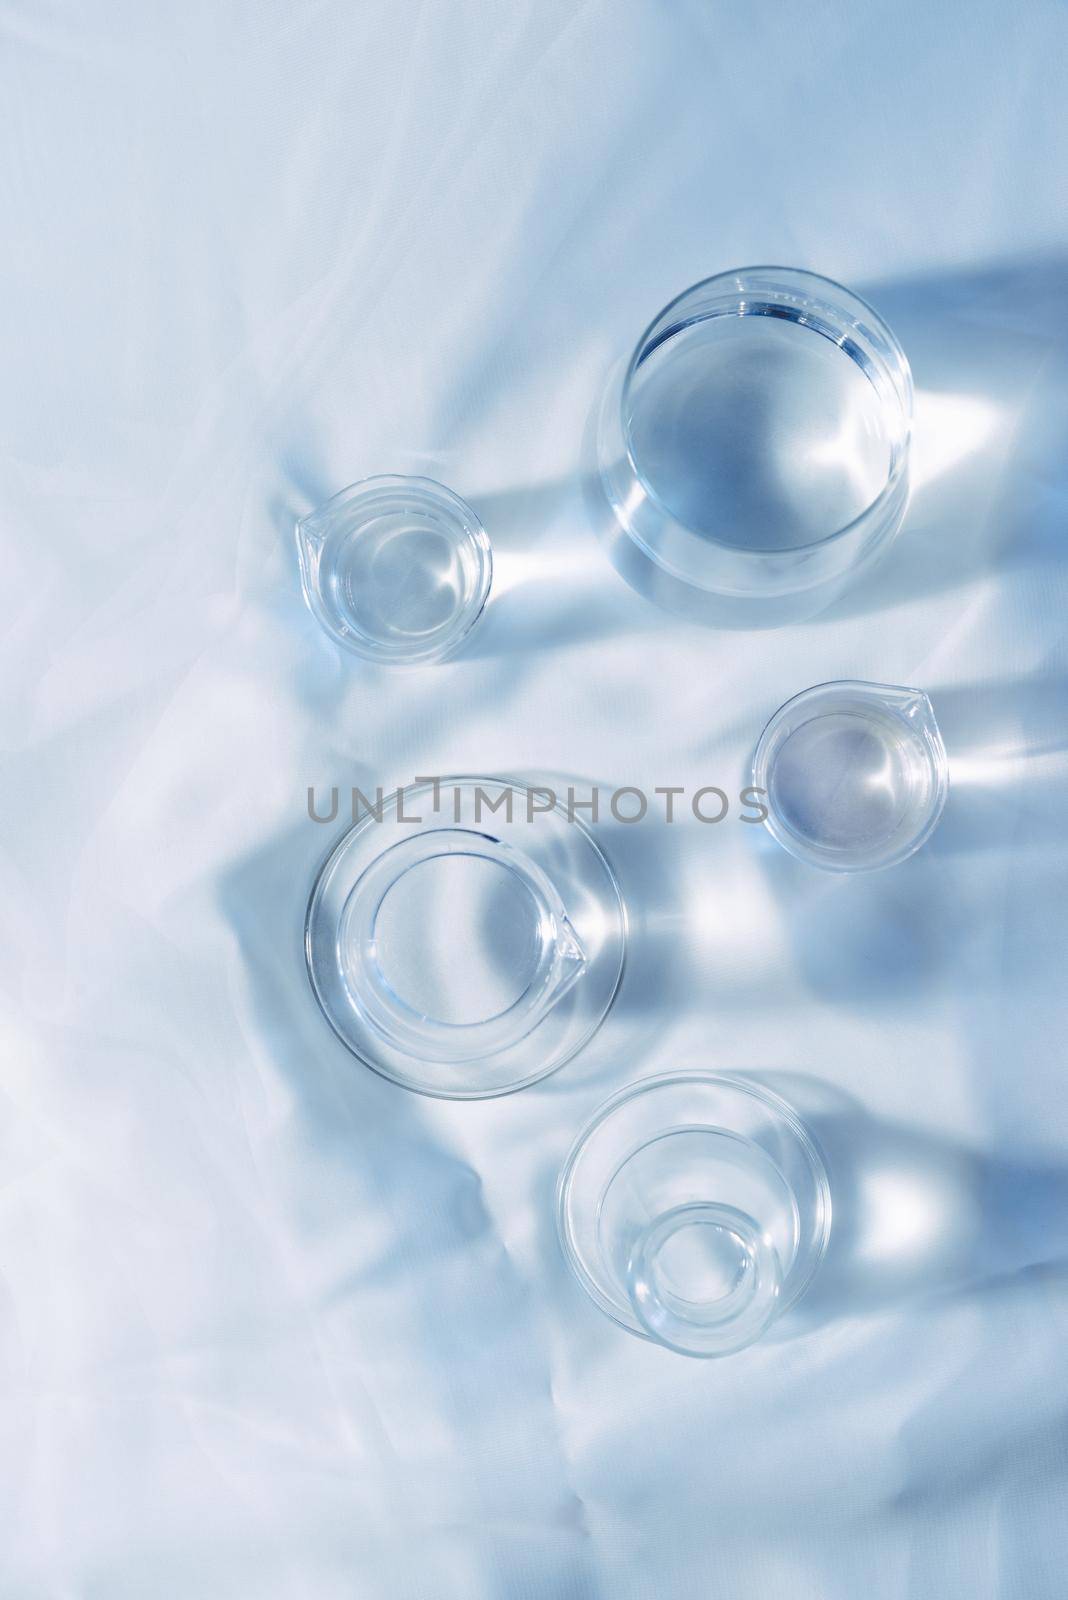 Scientific Glassware For Chemical, Laboratory Research